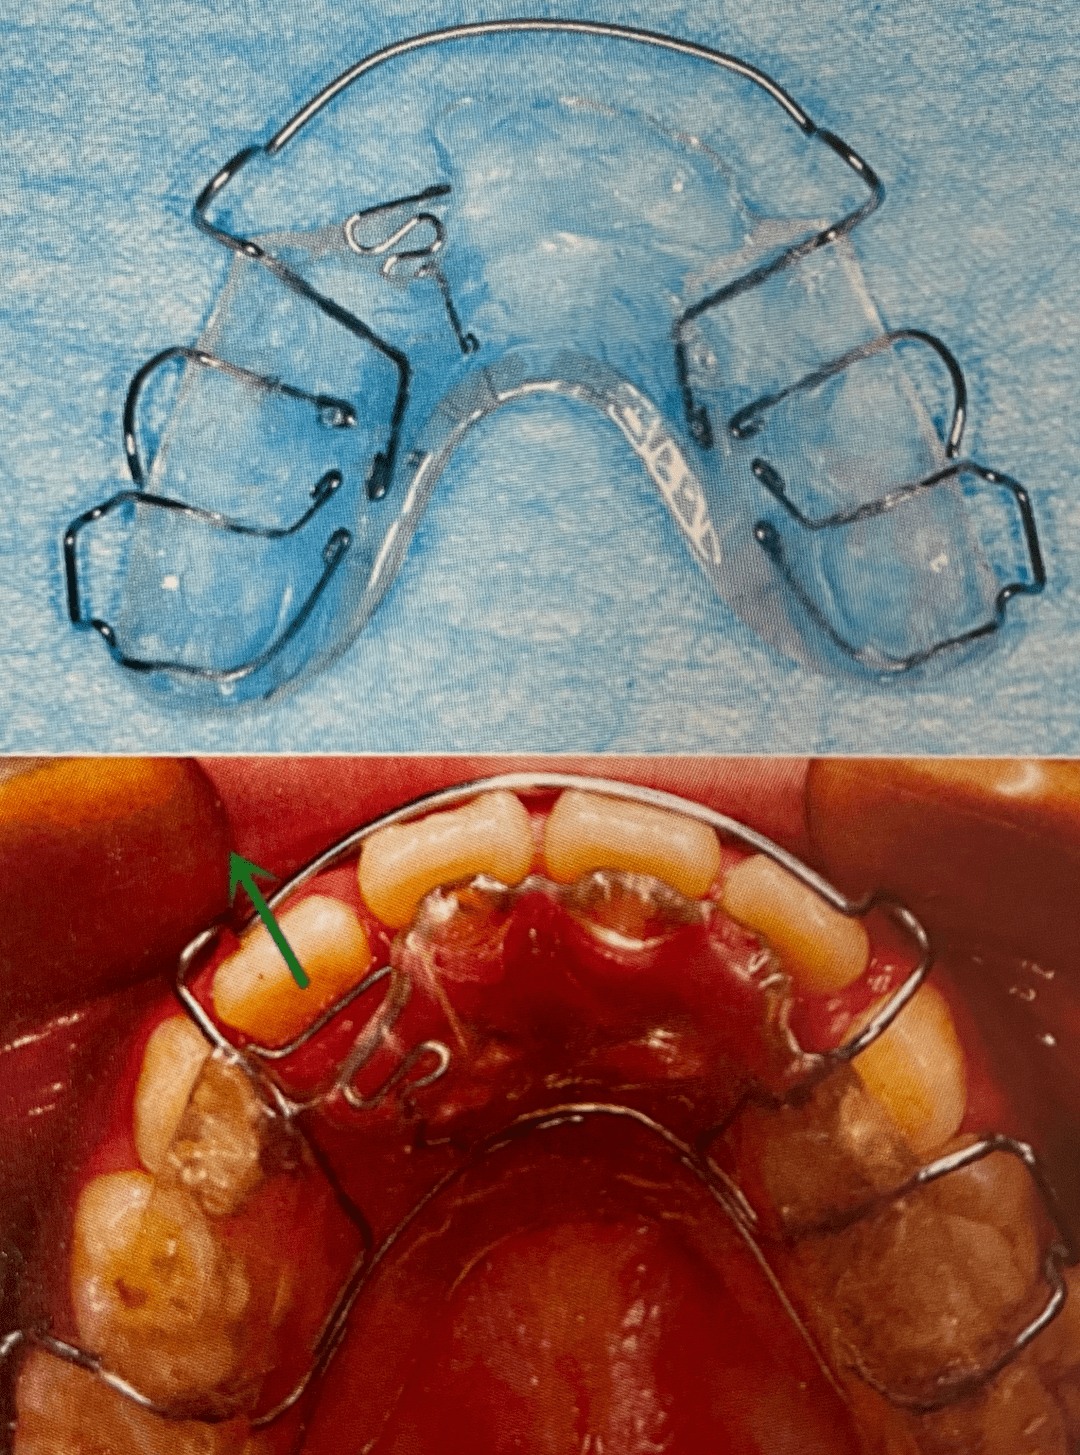 乳牙反颌矫正器种类图片